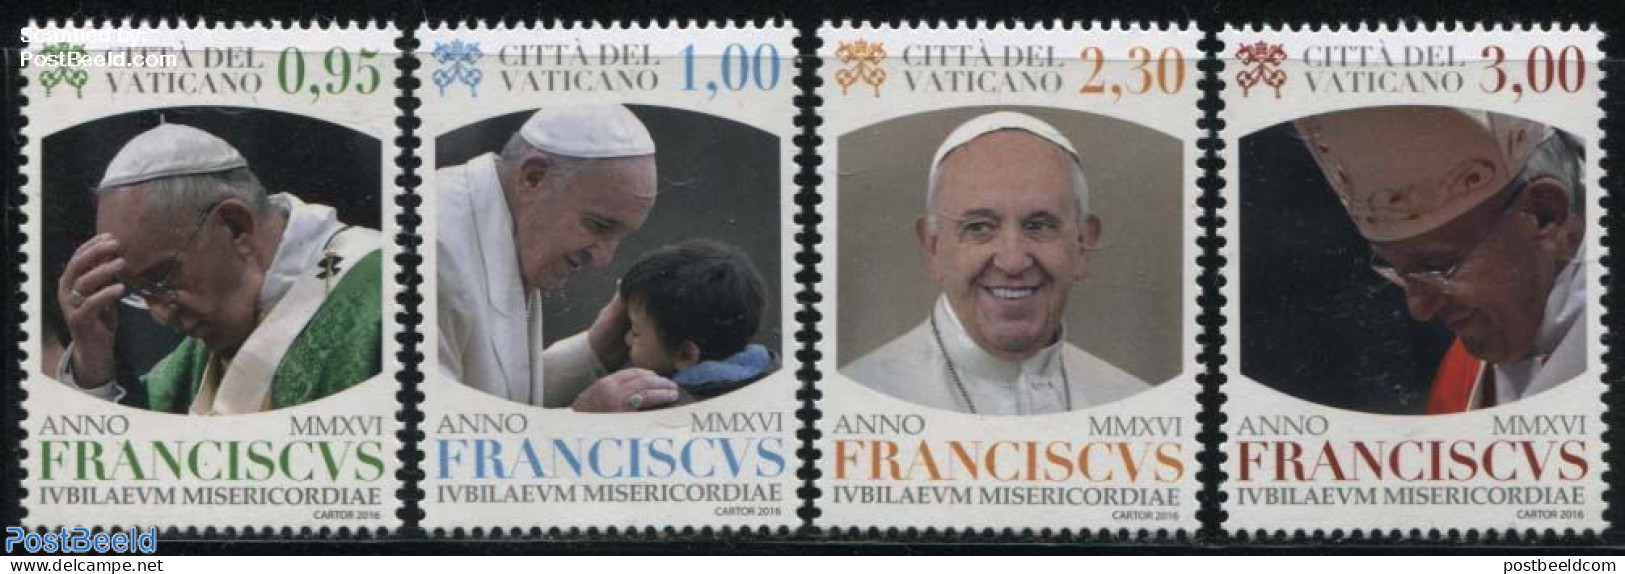 Vatican 2016 Jubilee Of Mercy 4v, Mint NH, Religion - Pope - Religion - Ongebruikt